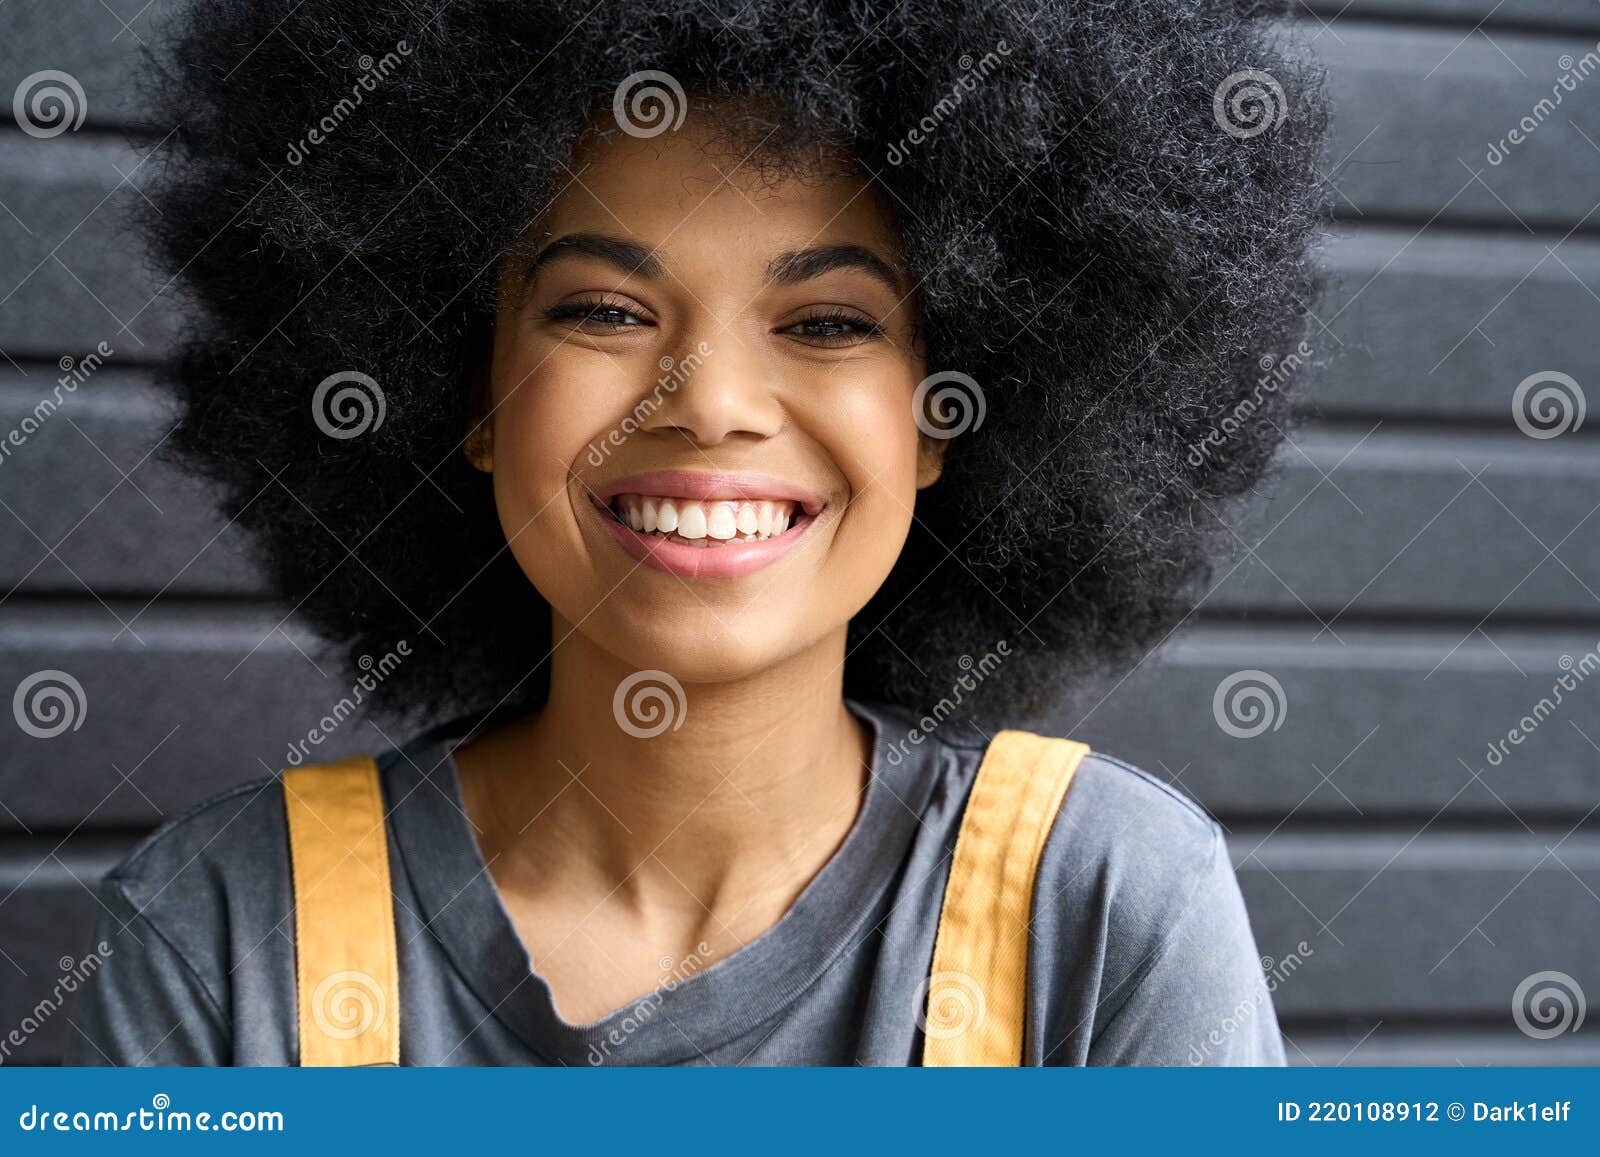 Với mái tóc xoăn nữ tính và gợi cảm của mình, kiểu chụp ảnh headshot này sẽ đem lại cho bạn sự tự tin và cá tính. Những tấm ảnh đầy sức sống này sẽ khiến bạn nổi bật giữa đám đông và truyền tải những thông điệp cá nhân một cách dễ dàng.